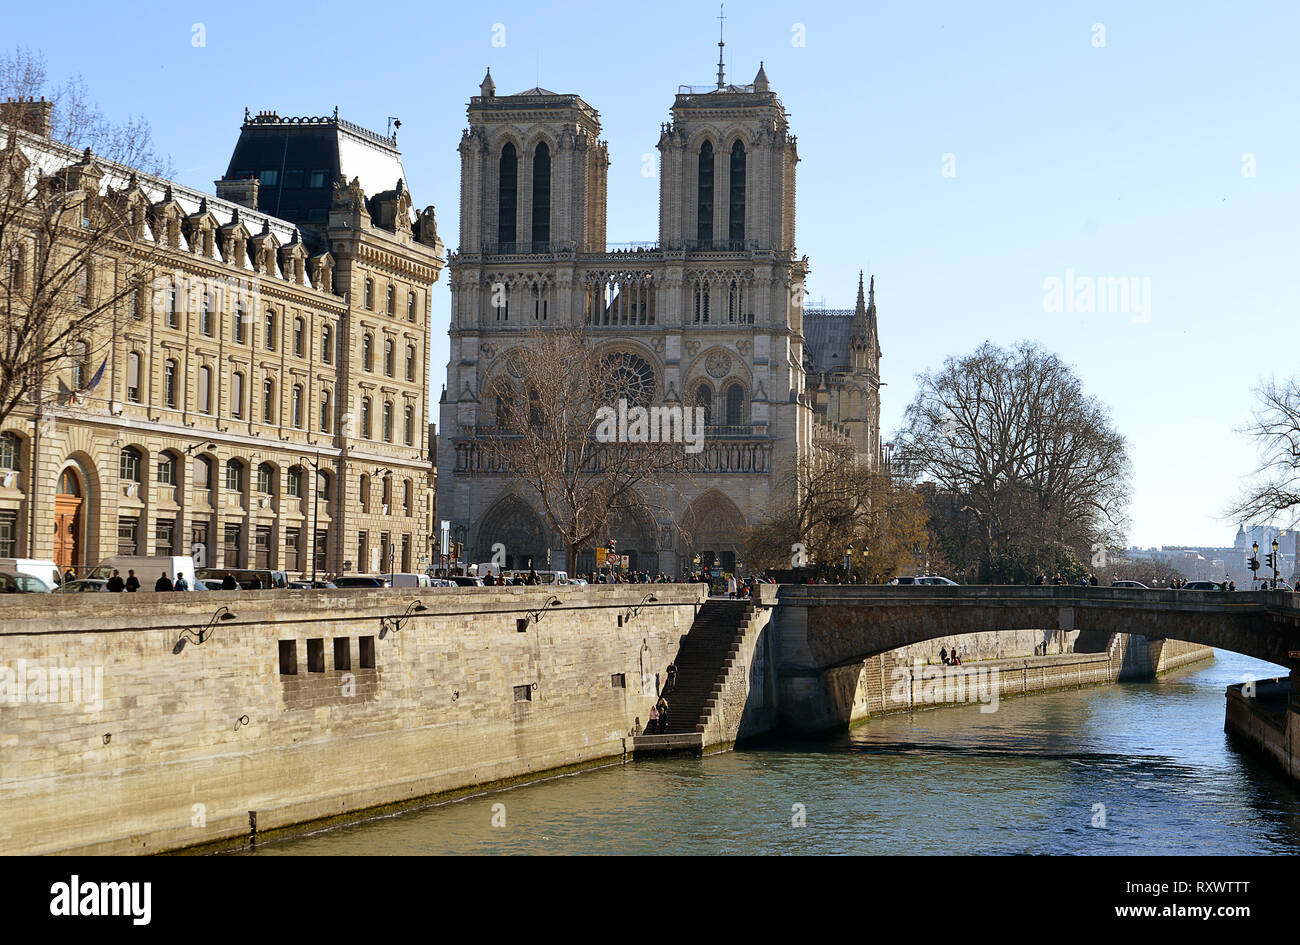 Parigi, Francia - 24 febbraio 2019: la cattedrale di Notre Dame e il ponte Pont des coueurs, dal Fiume Senna con la prefettura de Police, P Foto Stock